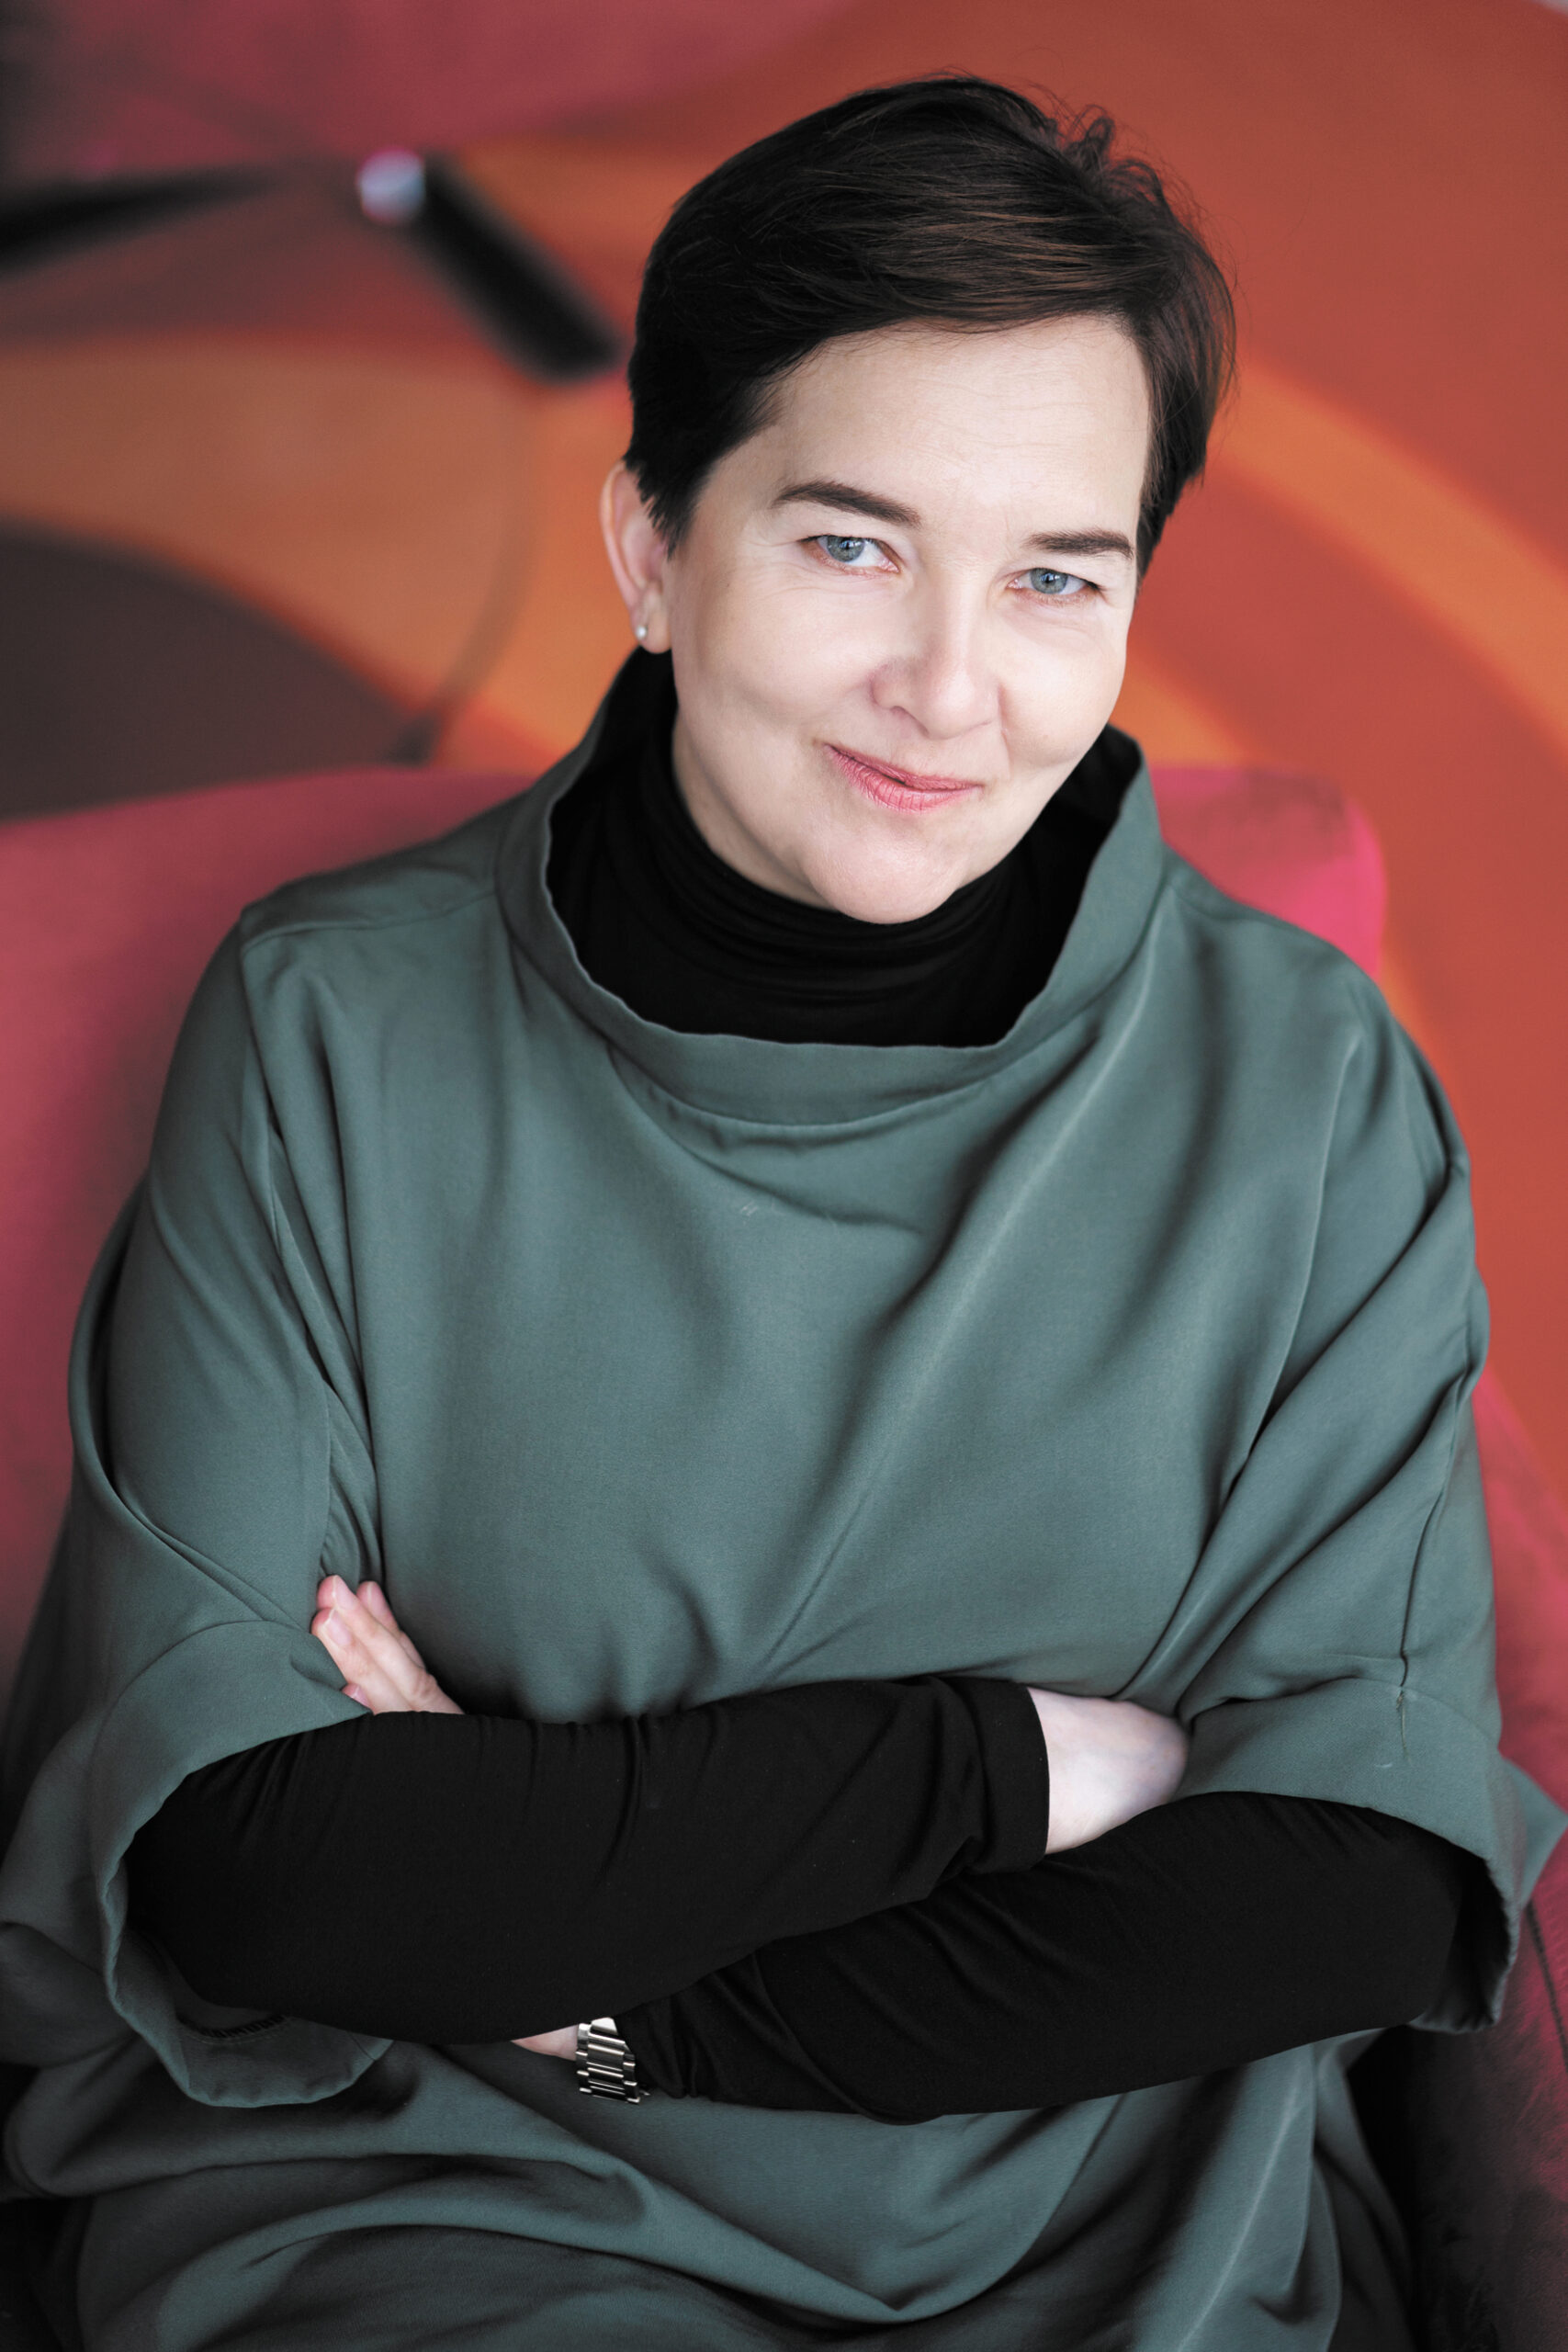 Aldona Zaorska